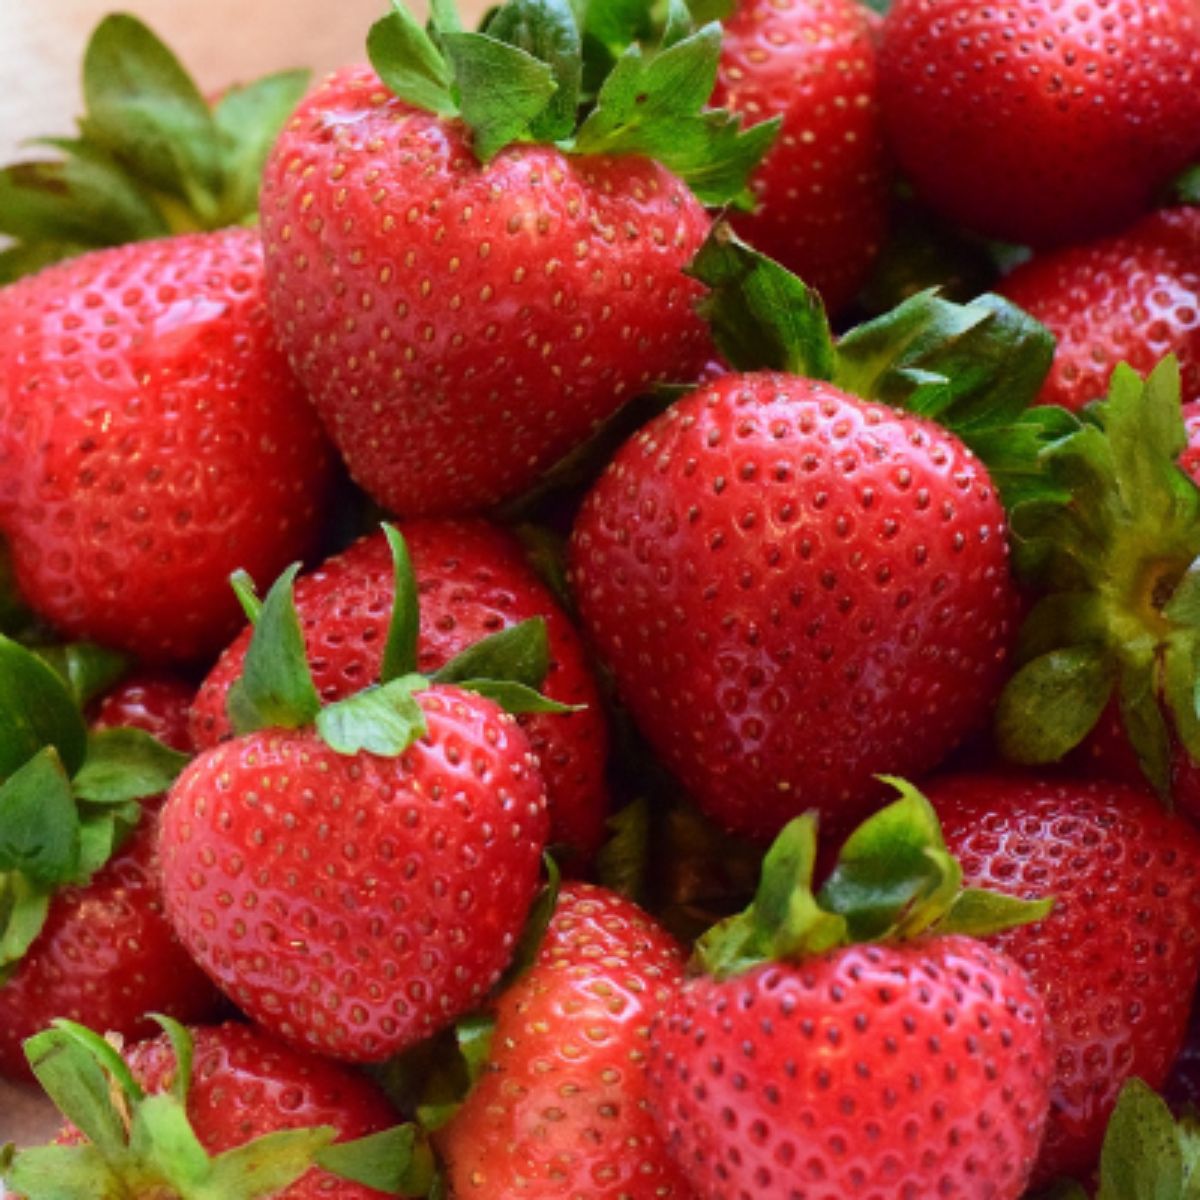 Bunch of fresh ripe camarose strawberries.